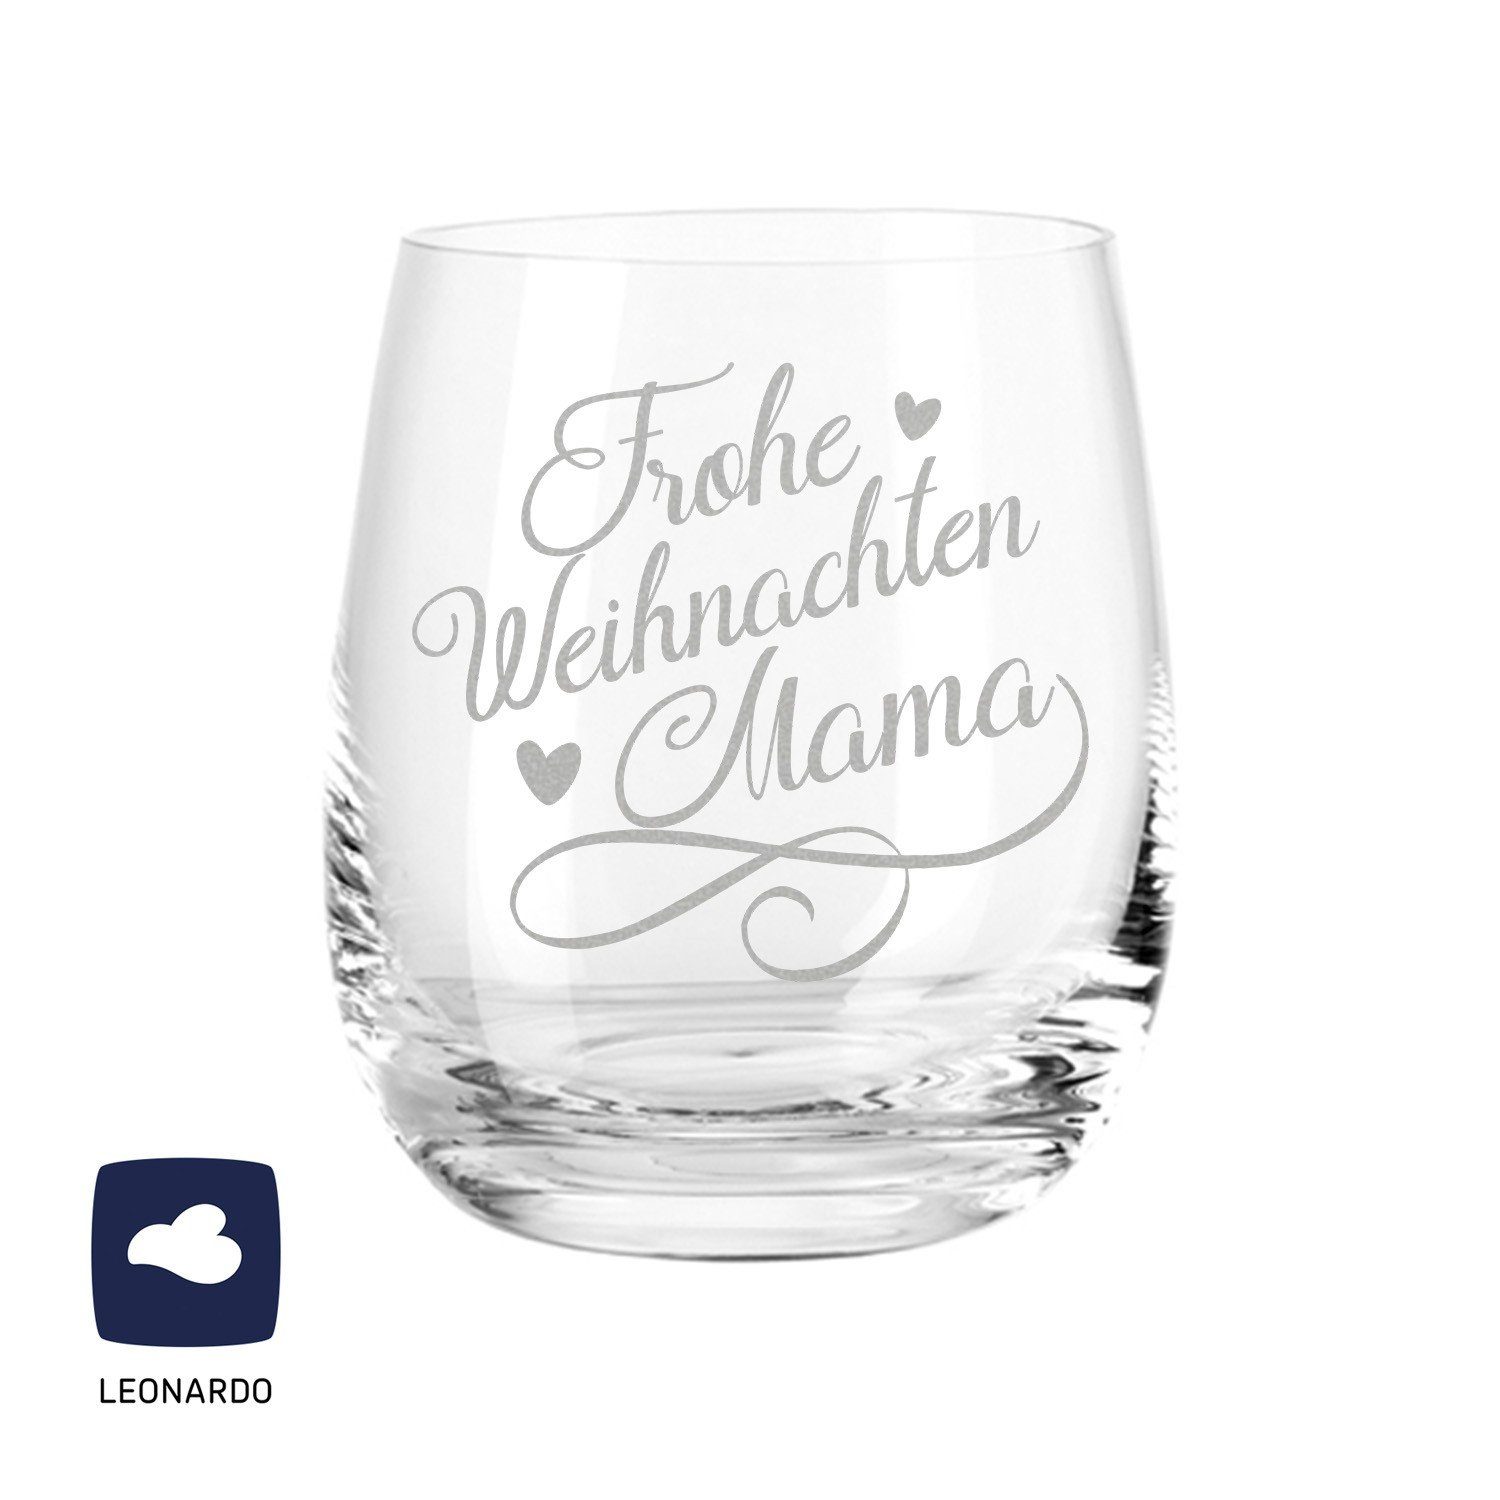 GRAVURZEILE Rotweinglas »Leonardo Weinglas mit Gravur - Frohe Weihnachten  Mama - Geschenk für Mama ideal als Muttertagsgeschenk - Weißweinglas  Rotweinglas als Geburtstagsgeschenk für Mama«, Glas online kaufen | OTTO